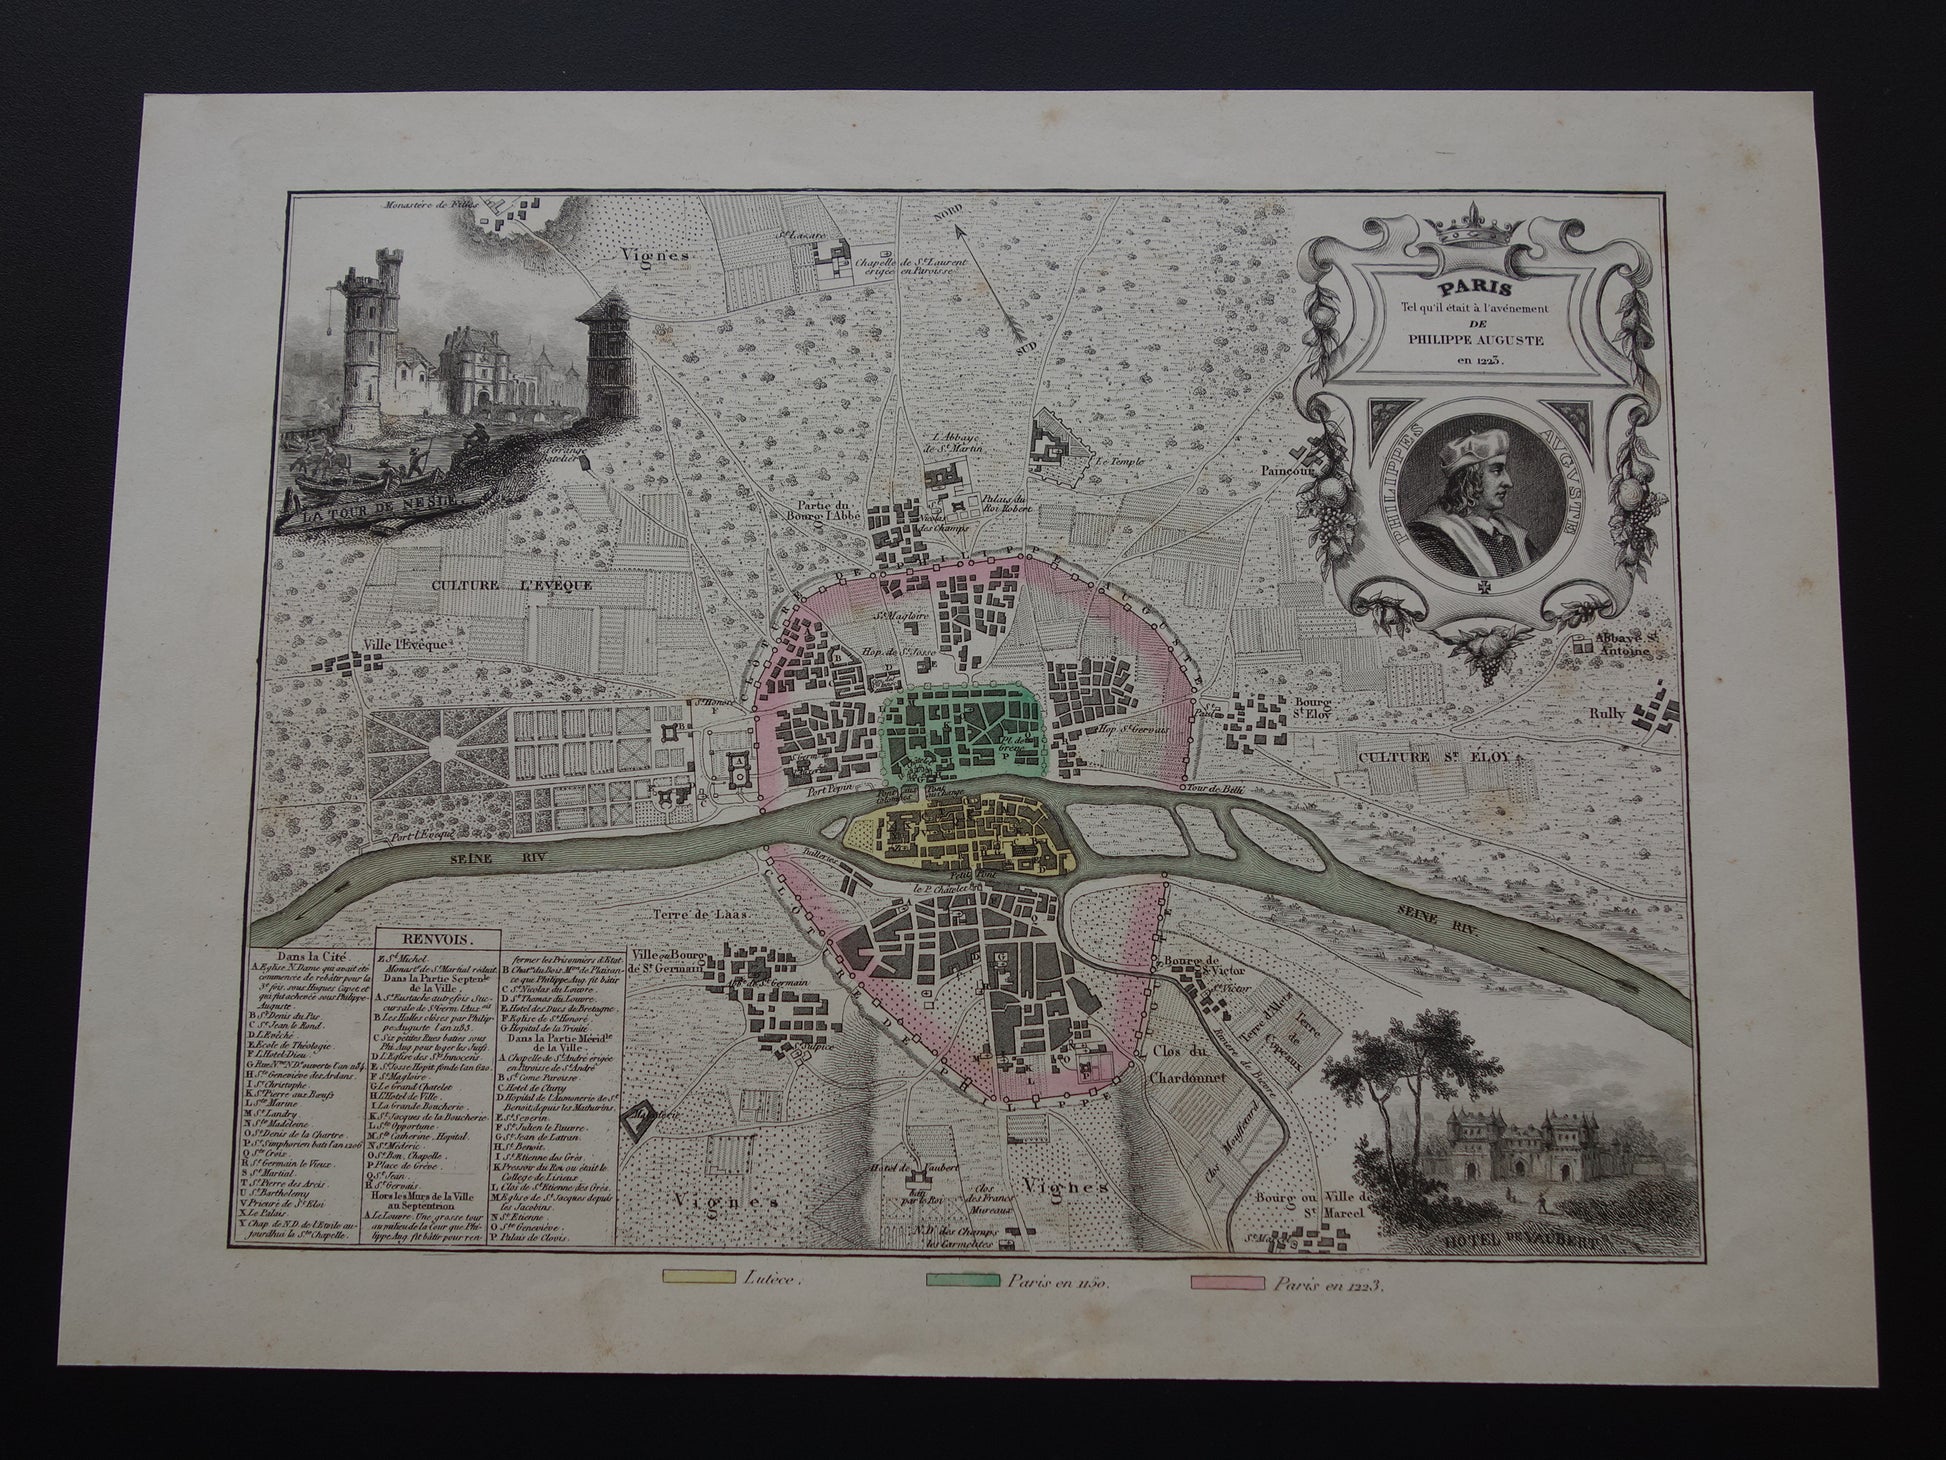 170+ jaar oude kaart van Parijs in het jaar 1223 Originele antieke geschiedeniskaart historische plattegrond